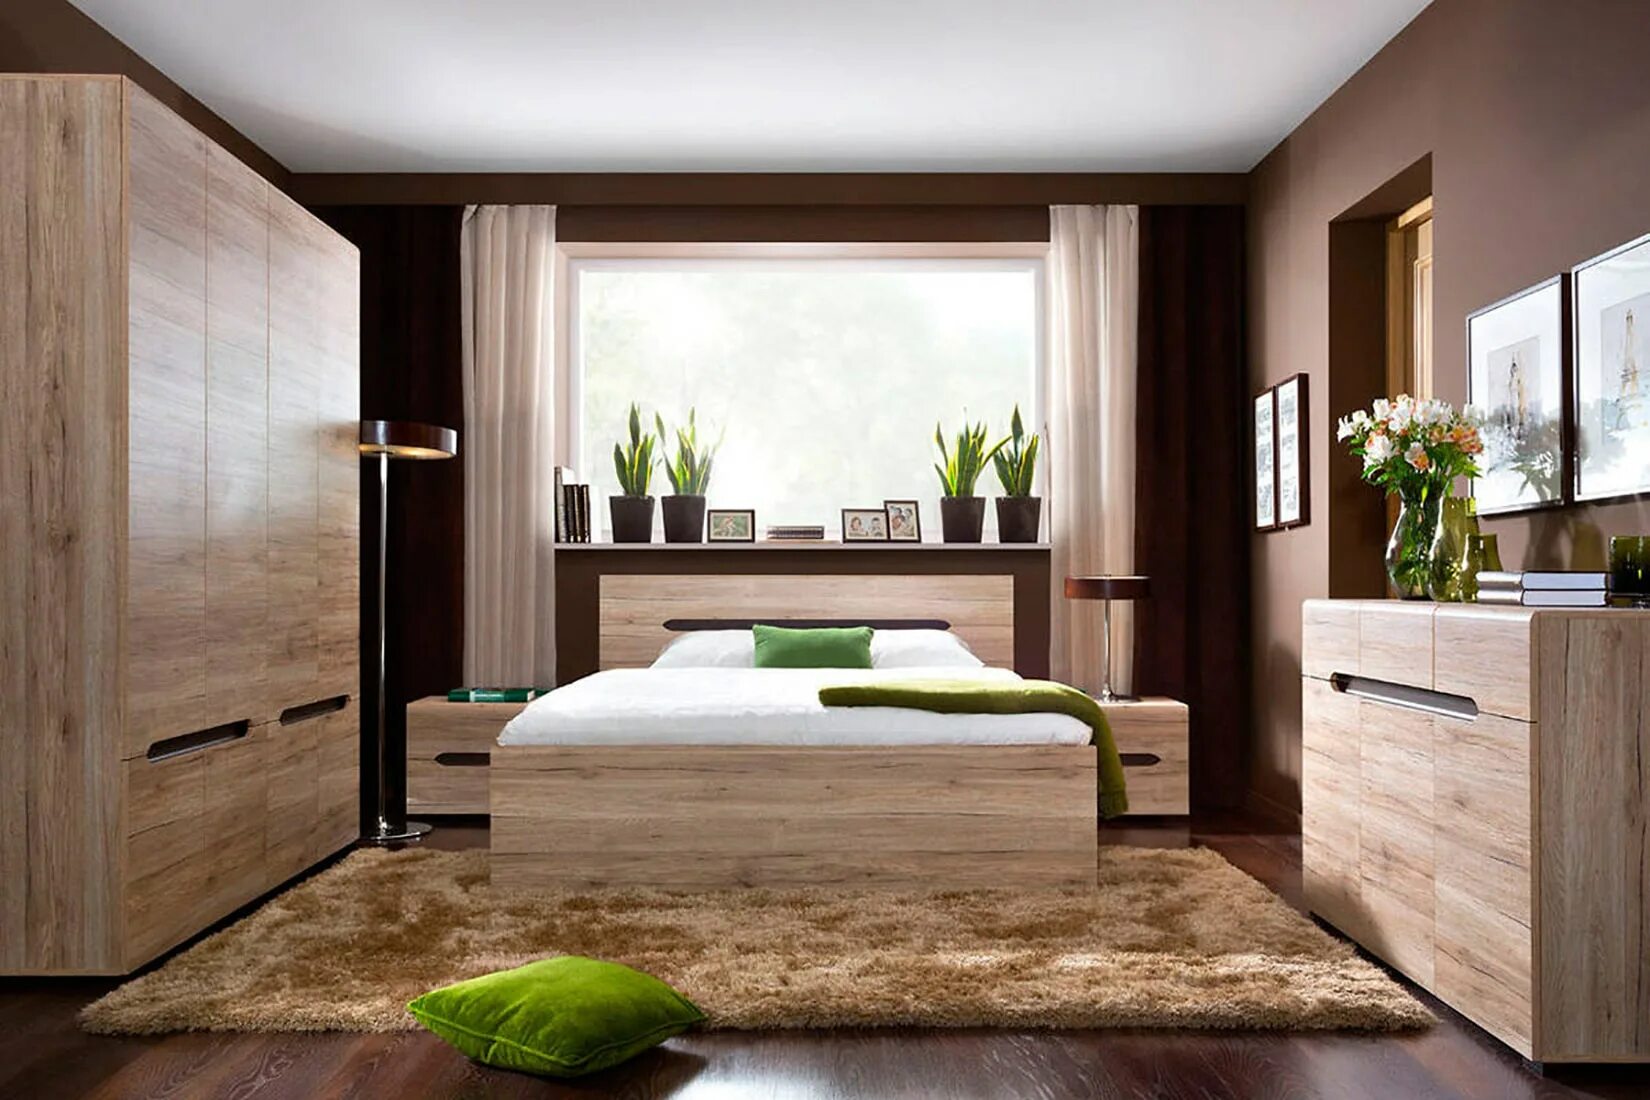 Современная спальня мебель купить. Кровать Ацтека дуб Санремо. Ацтека кровать 160 дуб Санремо. Ацтека БРВ спальня. Гостиная Ацтека дуб Сан Ремо.